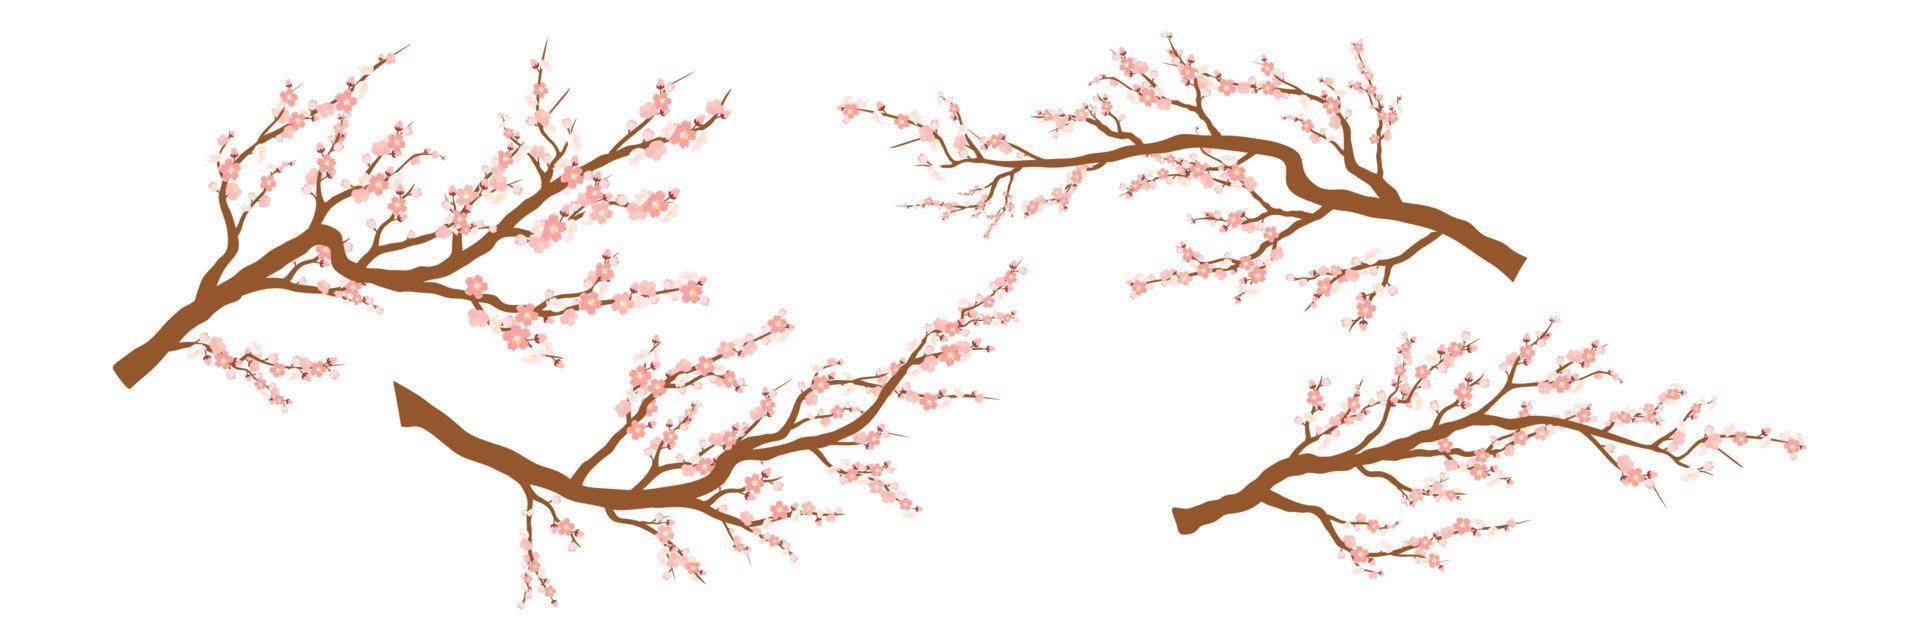 satz von frühlingsblühenden baumasten, baumast mit rosa blumen. Sakura oder Kirsche vektor